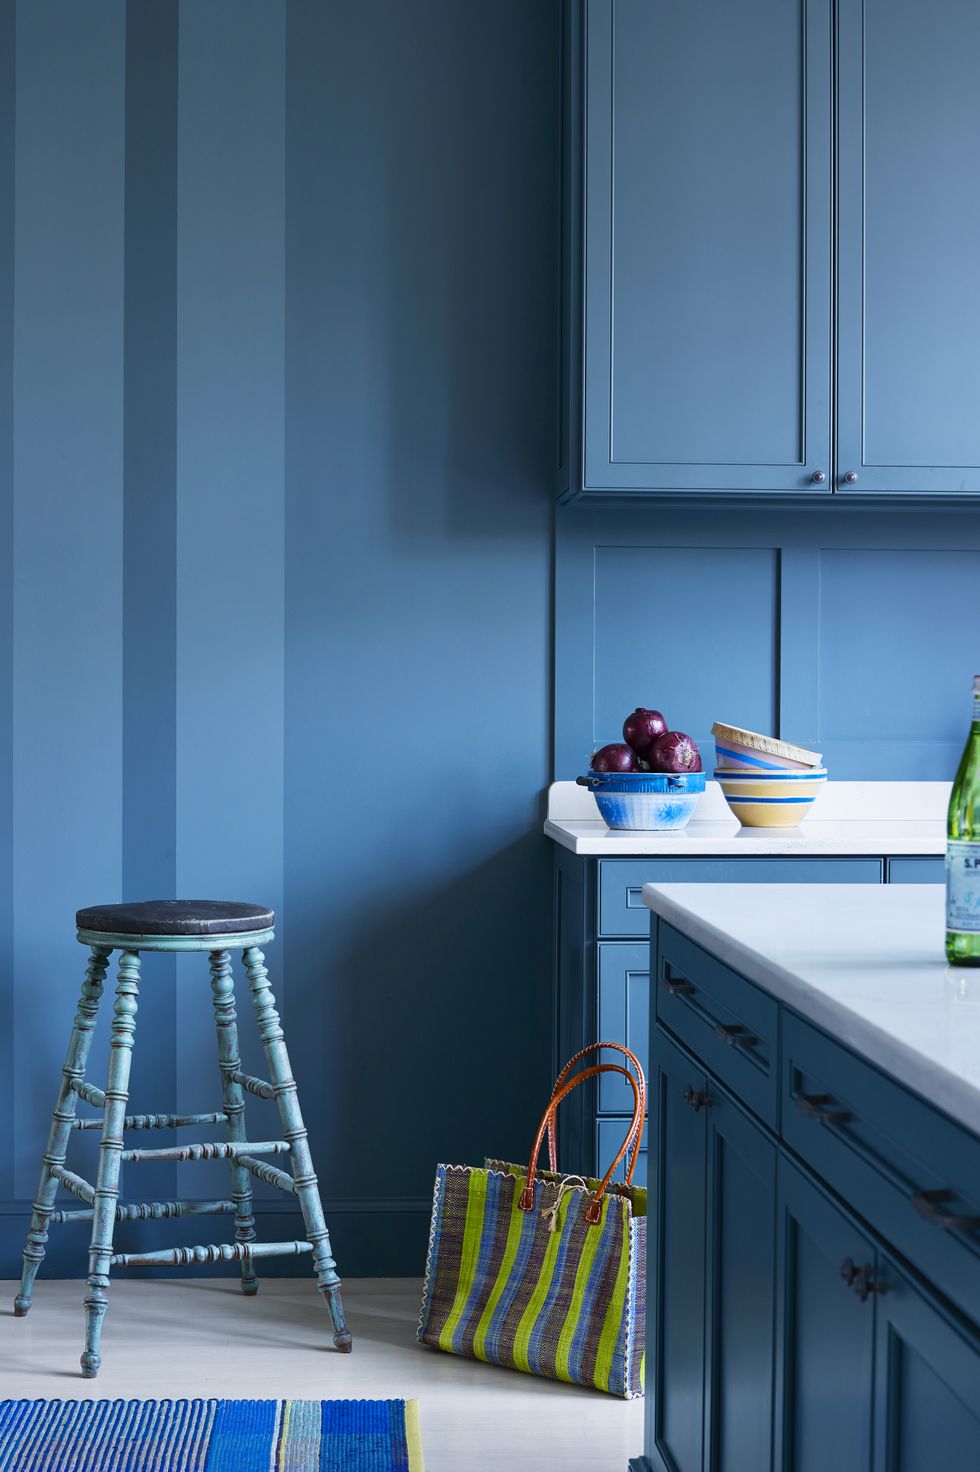 Khi bạn không có đủ ngân sách để ốp tường phòng bếp bằng gạch hoa văn hay họa tiết màu xanh lam bắt mắt thì có thể lựa chọn giải pháp sơn toàn bộ bề mặt tường và tủ bếp như khu vực nấu nướng này, trông cũng rất cá tính đung không nào?